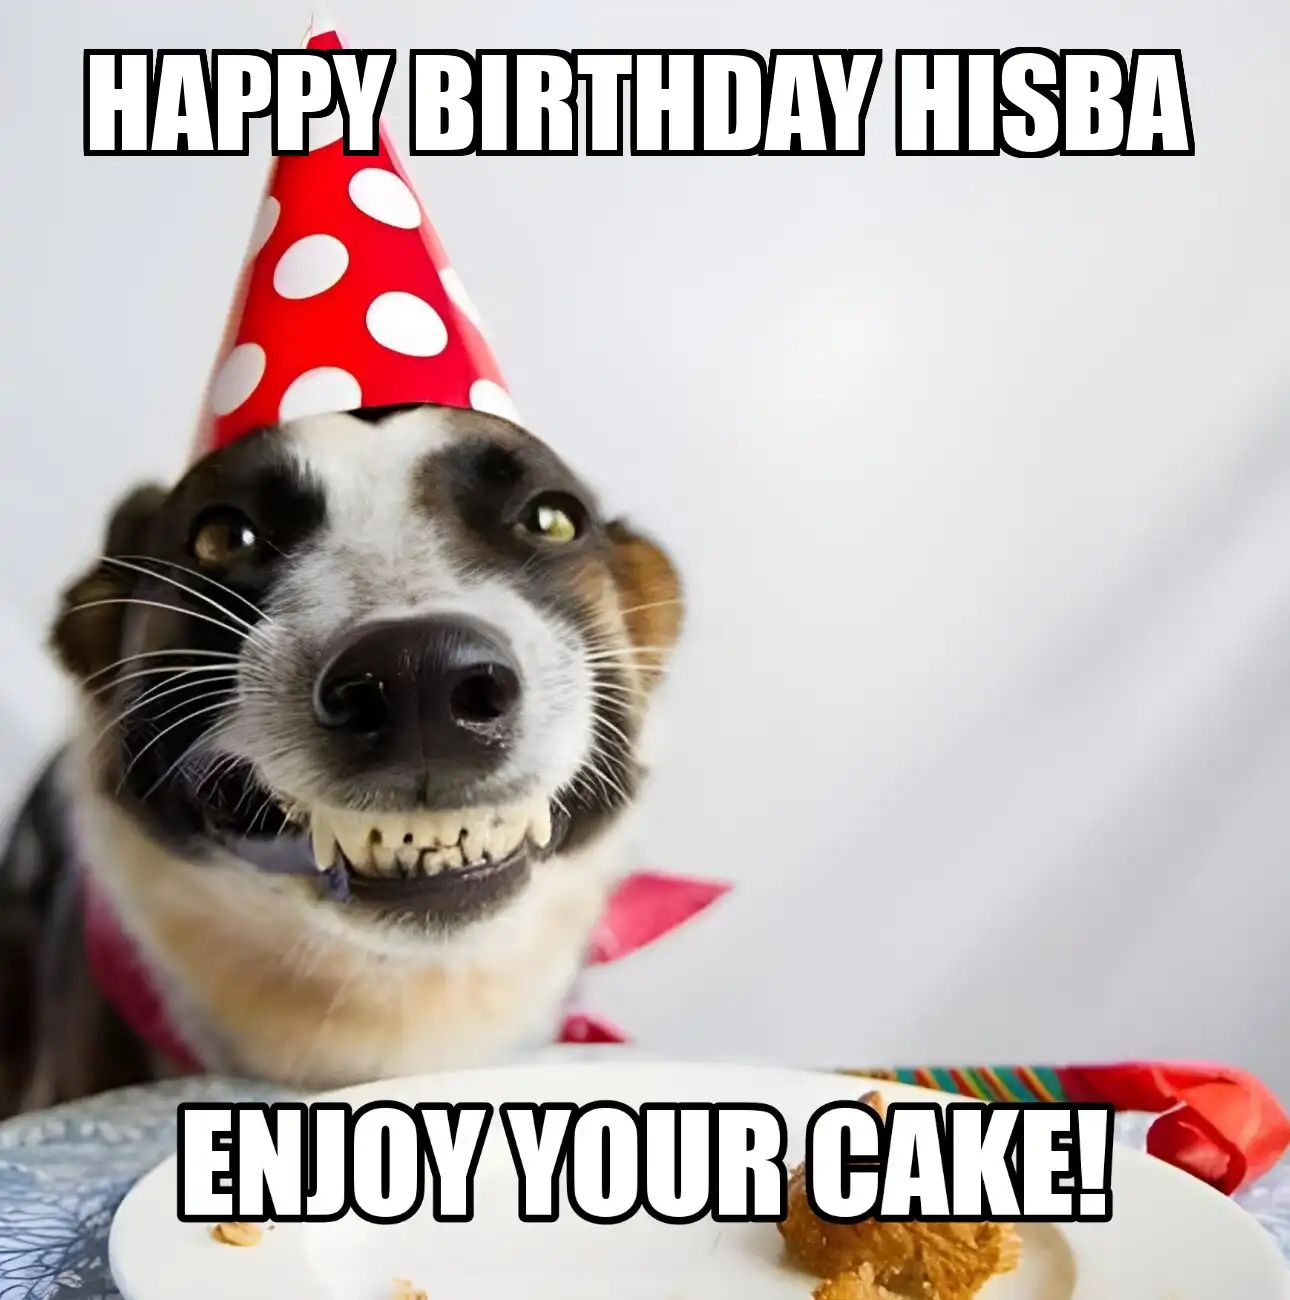 Happy Birthday Hisba Enjoy Your Cake Dog Meme